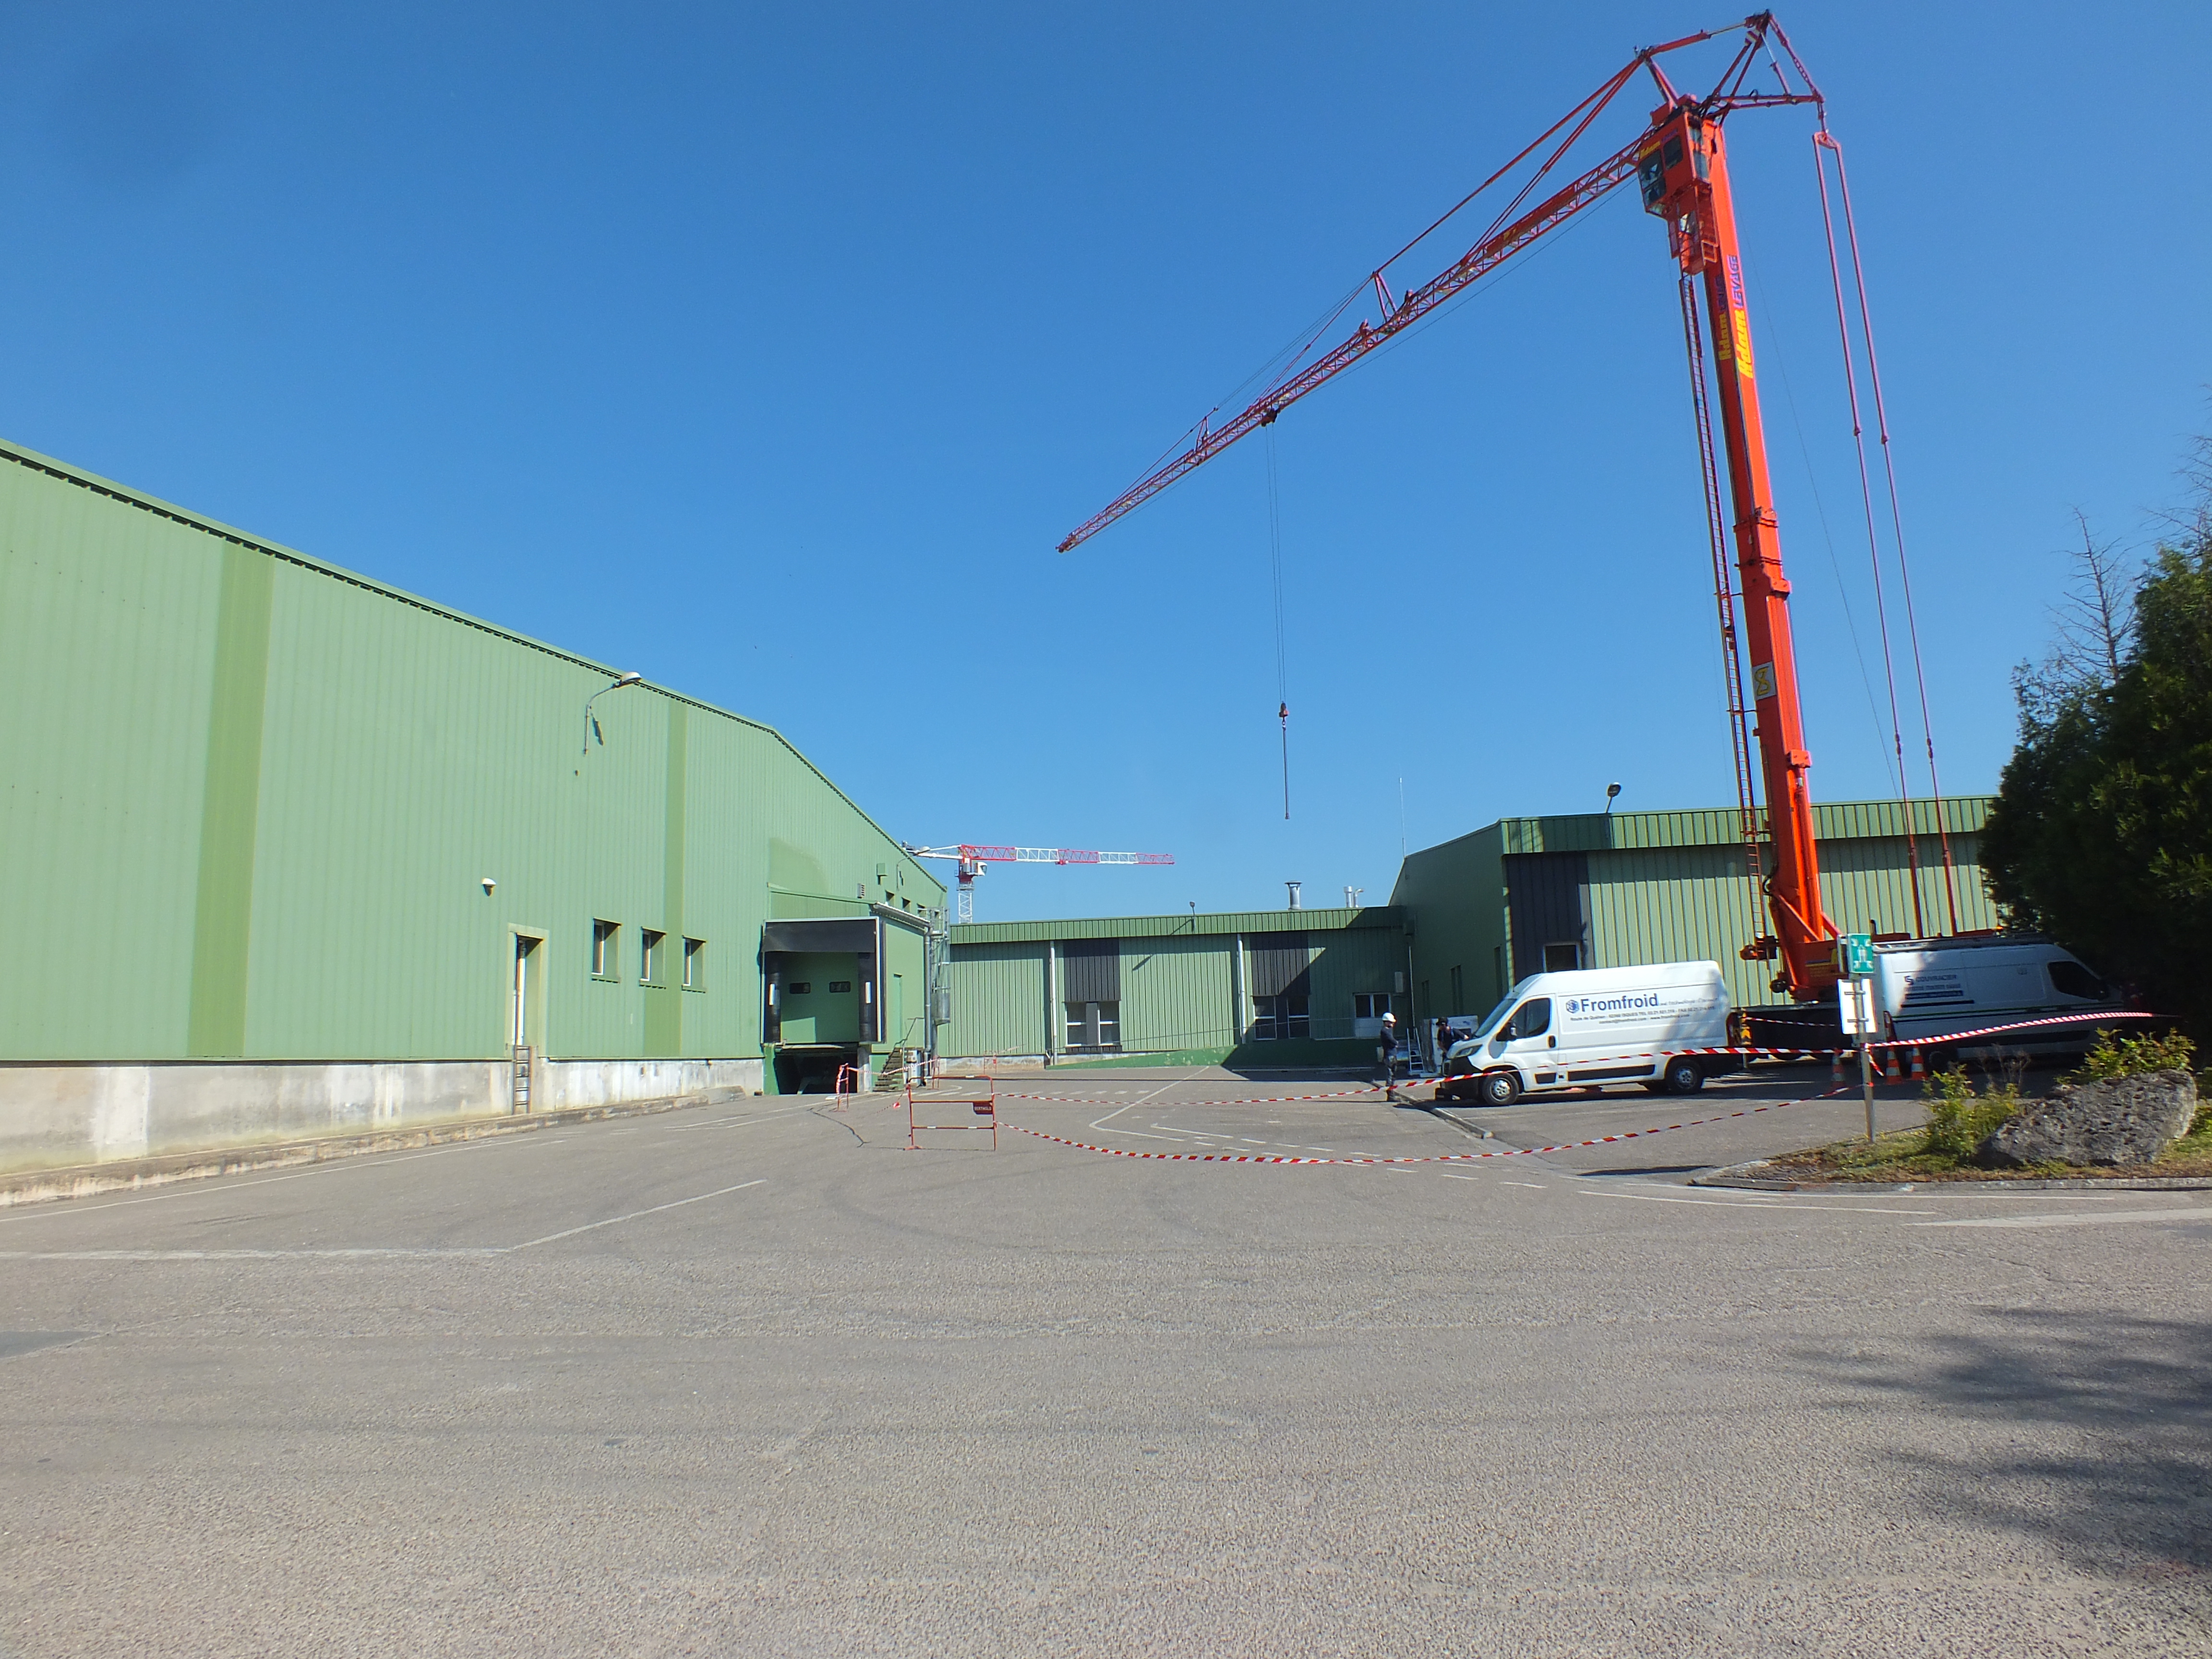 Des travaux sont en cours dans l’usine existante, et un nouveau parking a été construit pour permettre l’extension. Photo : AH.